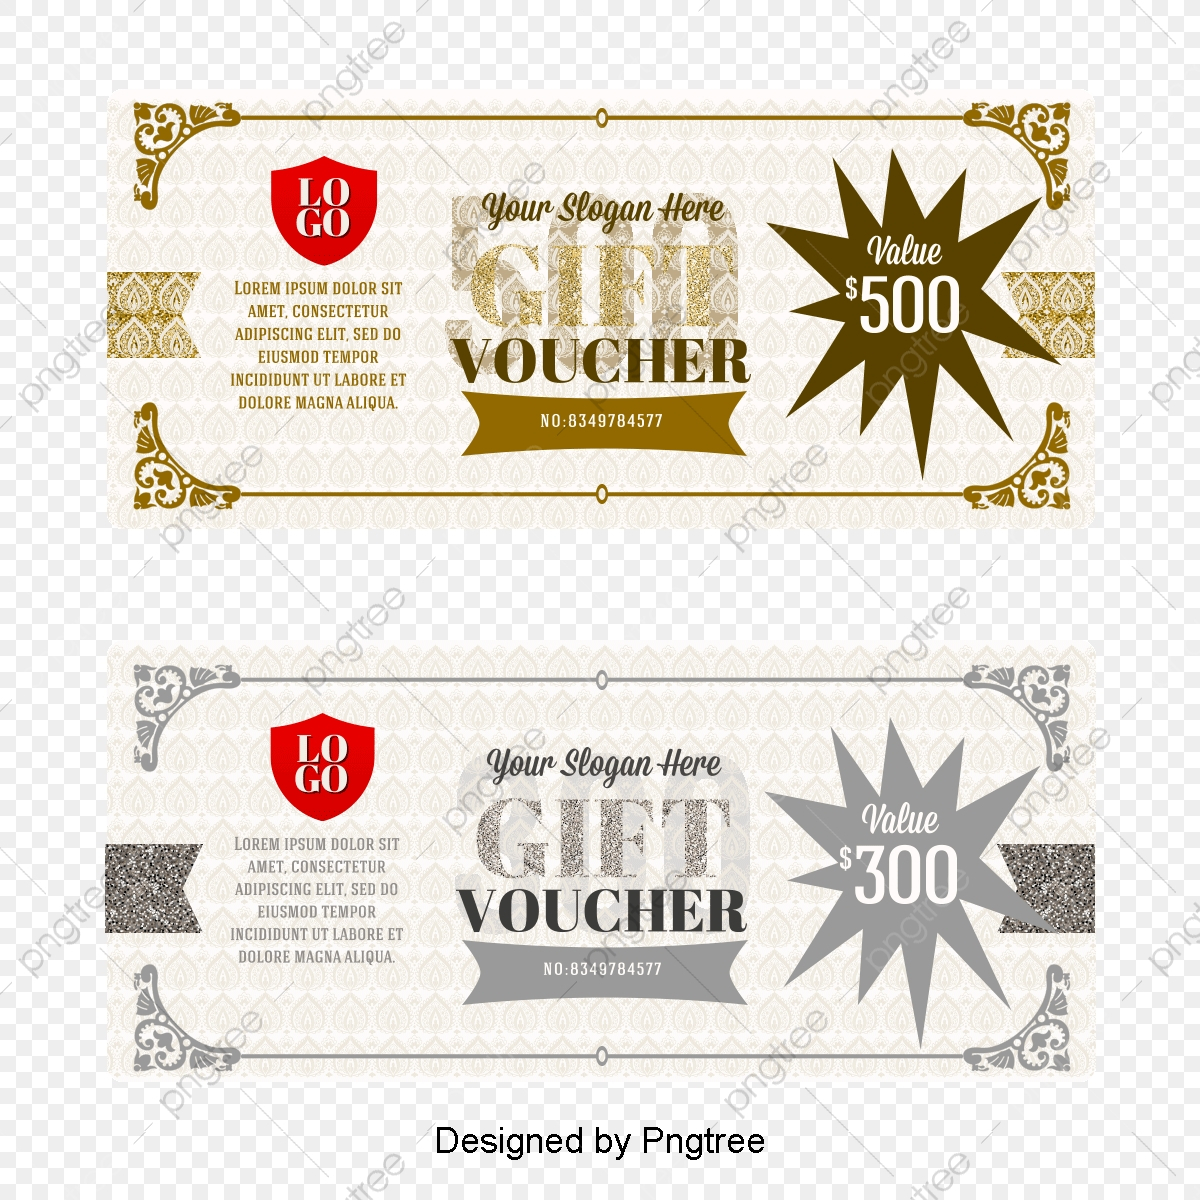 Vector Gift Certificate Template, Vector Voucher, Fantasy In Gift Certificate Template Photoshop